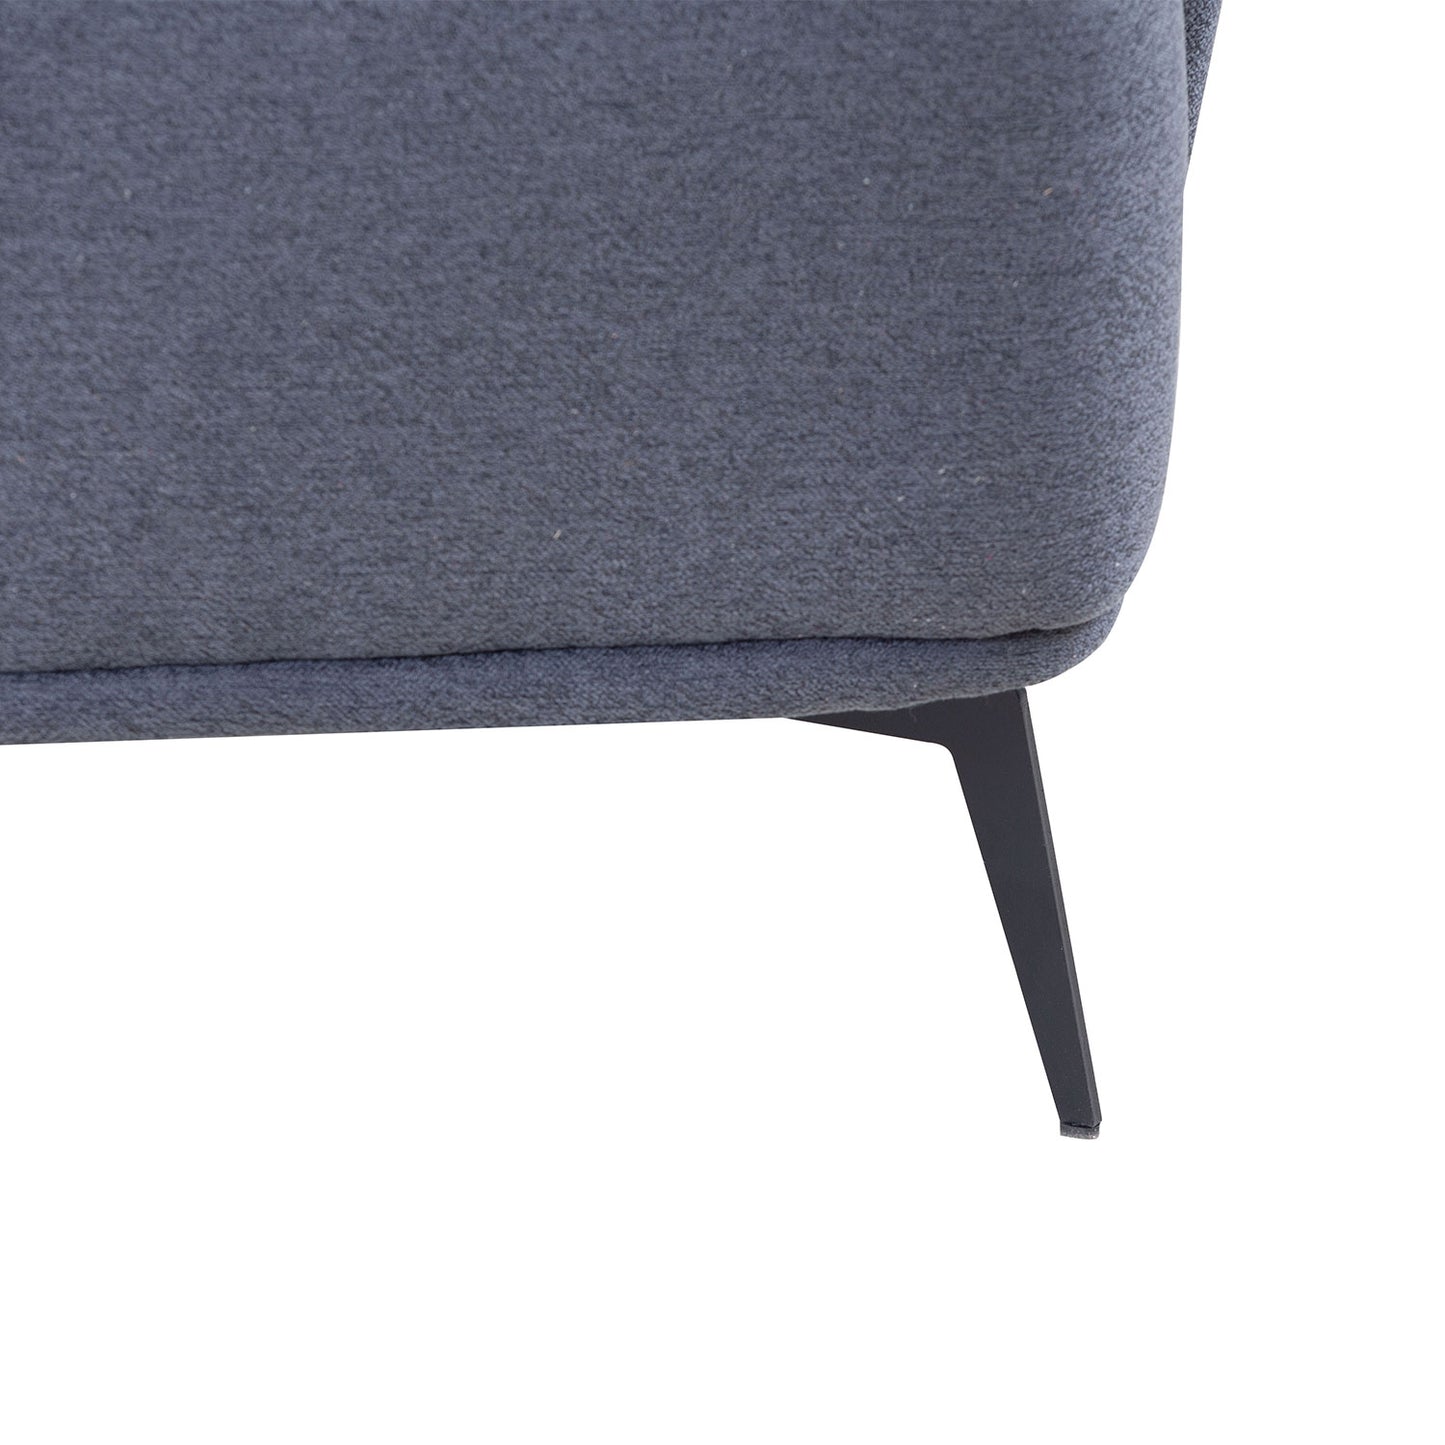 Justone Modern Upholstered Sectional - Dark Gray